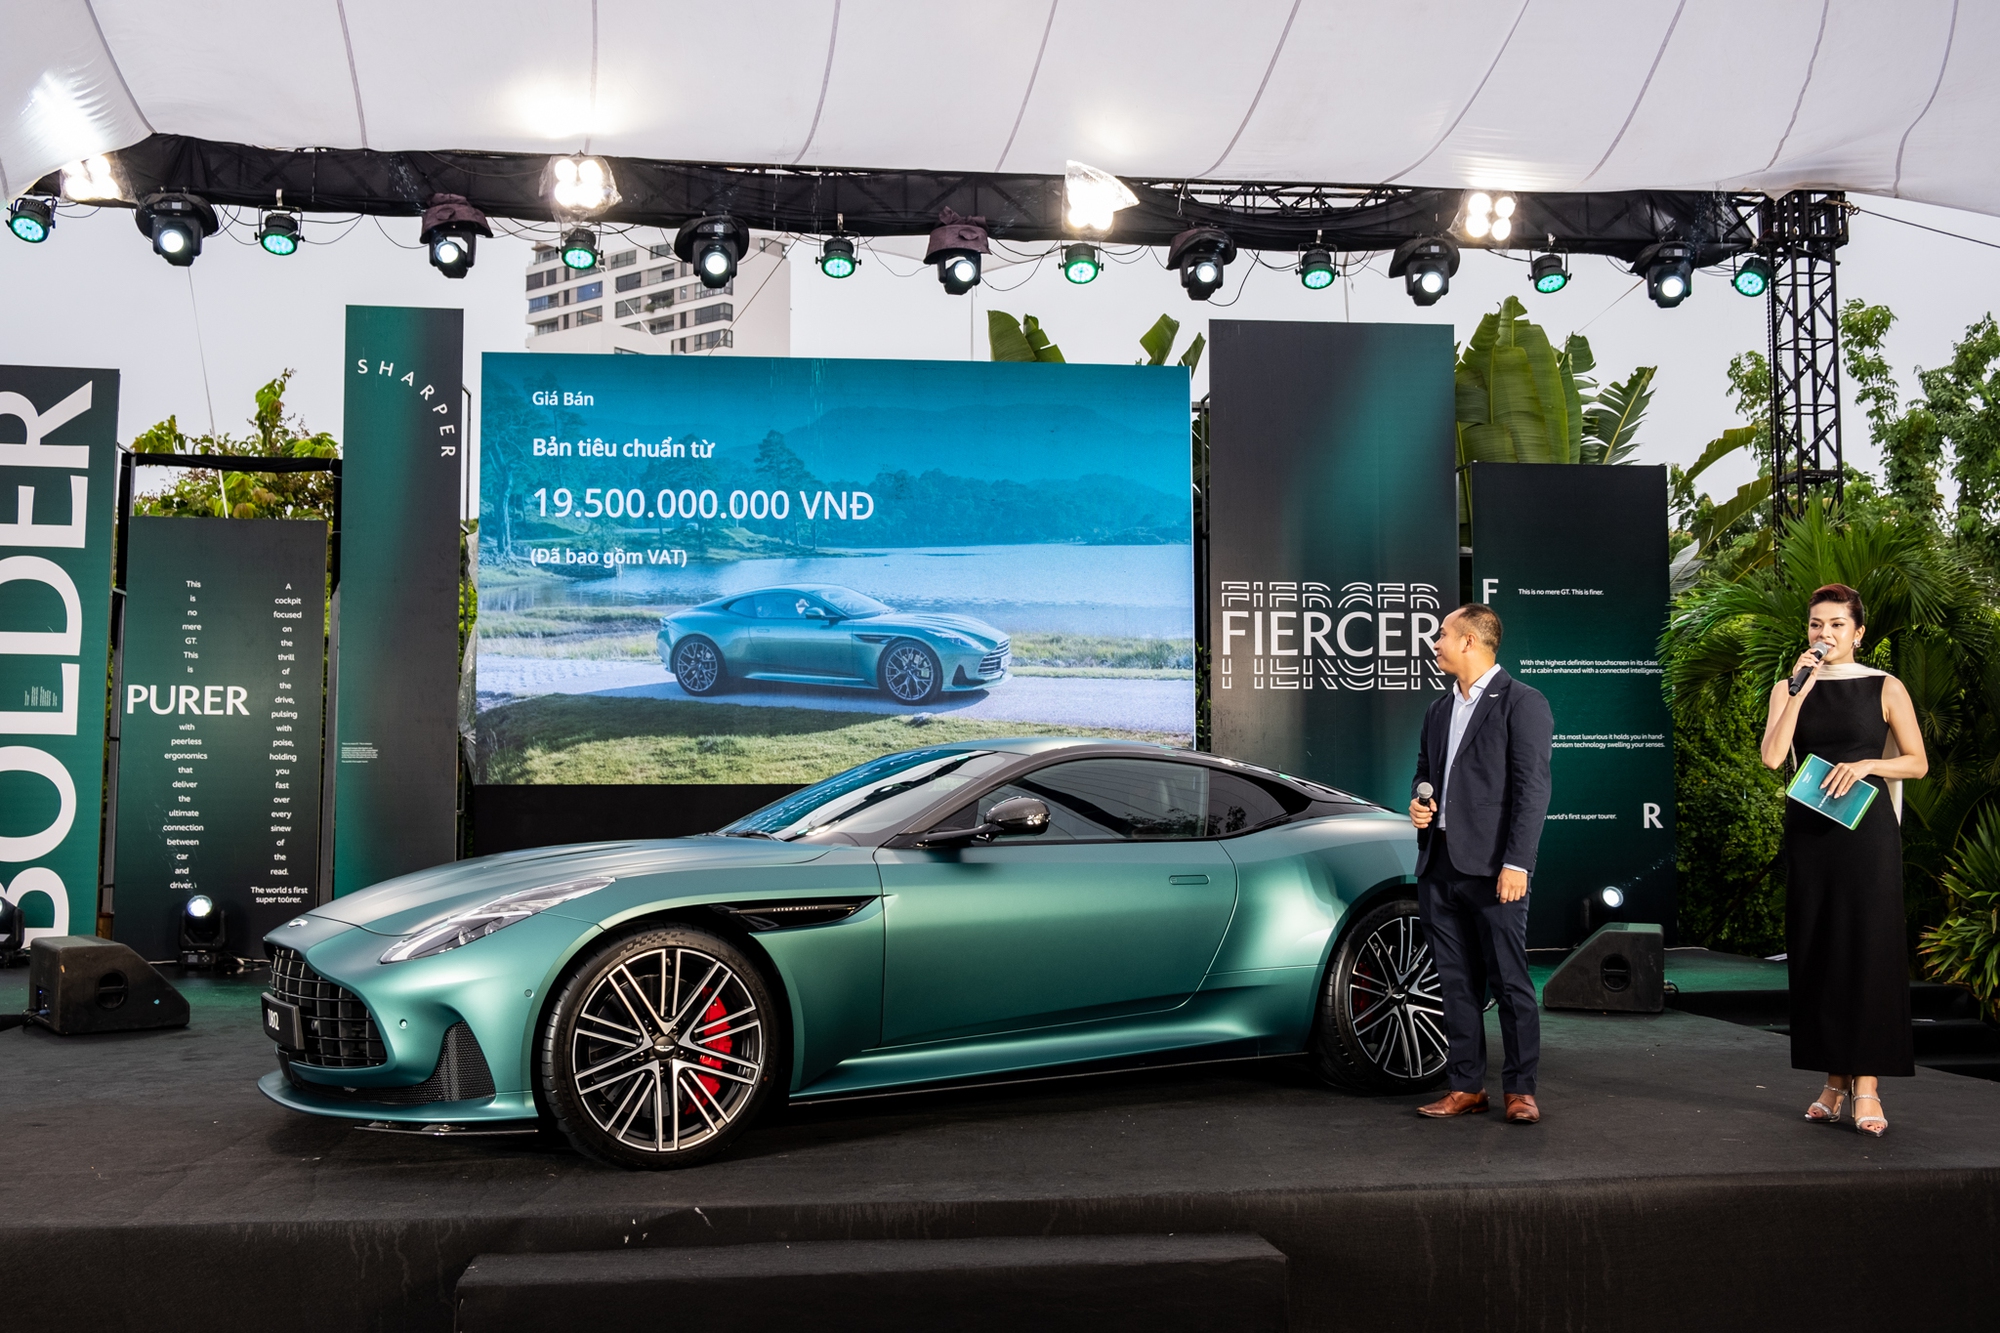 Aston Martin DB12 ra mắt Việt Nam: Giá từ 19,5 tỷ, đại gia thích mui trần hay option riêng vẫn đặt được nhưng cần chờ đợi- Ảnh 1.